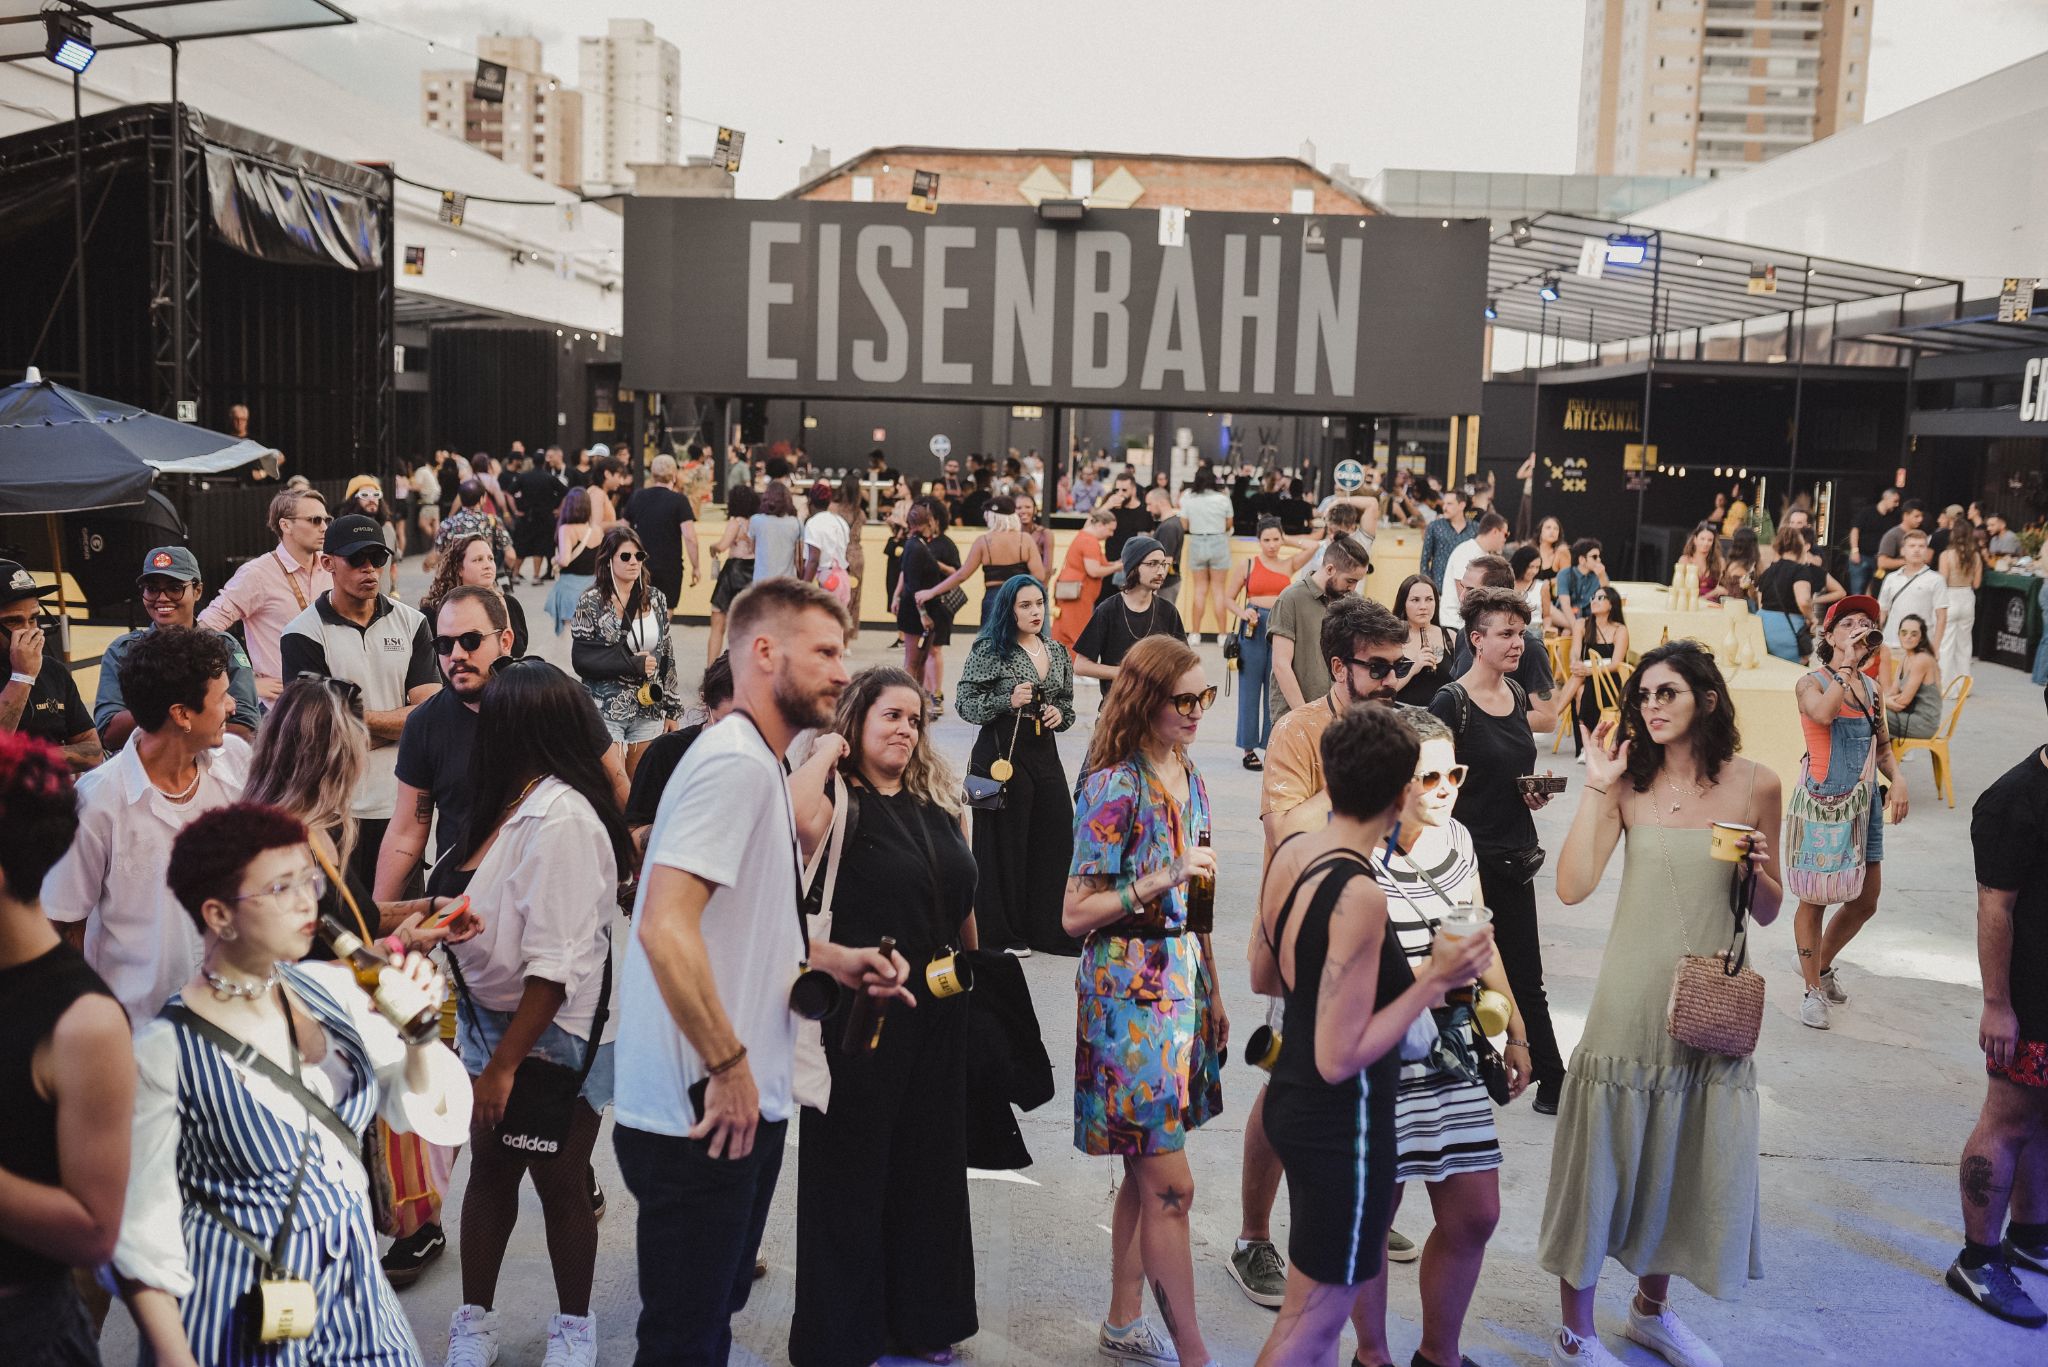 day02 246 - Eisenbahn apresenta evento gratuito e inédito em Blumenau, criado com foco em música, gastronomia e cerveja